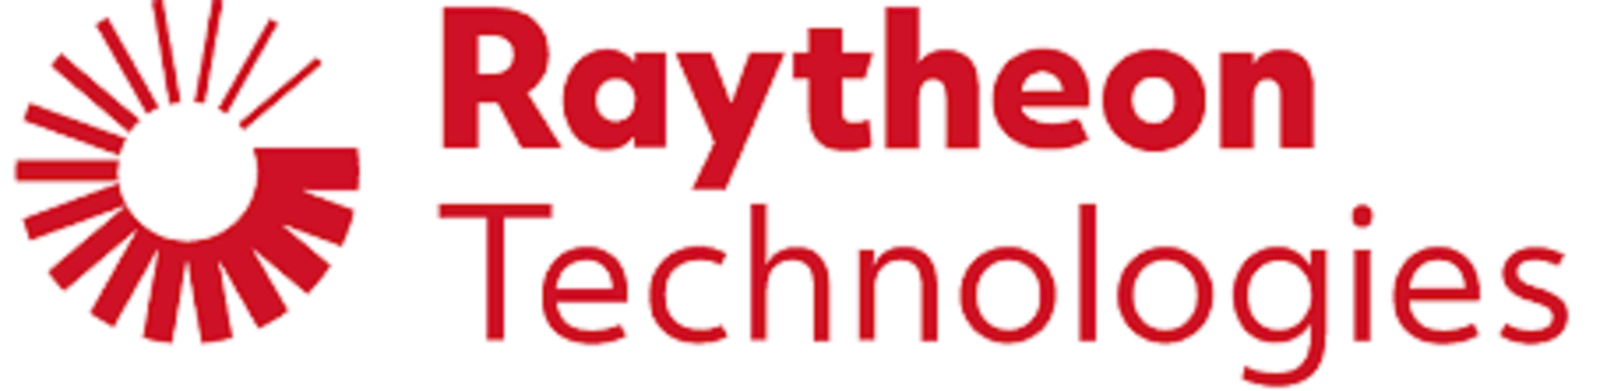 Raytheon Technologies Recruitment